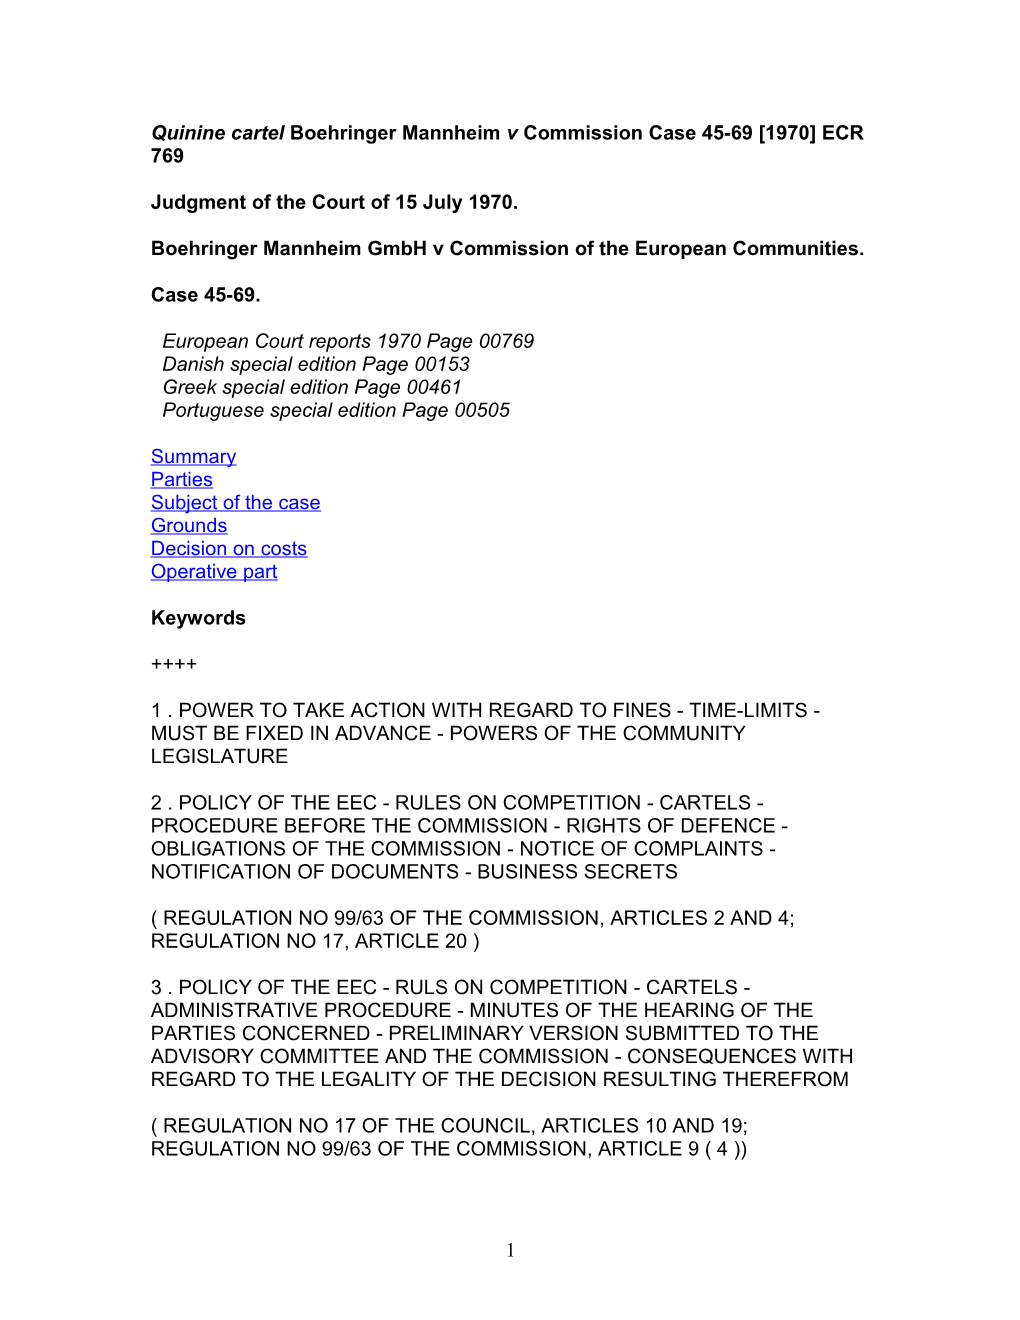 Quinine Cartel Boehringer Mannheim V Commission Case 45-69 1970 ECR 769